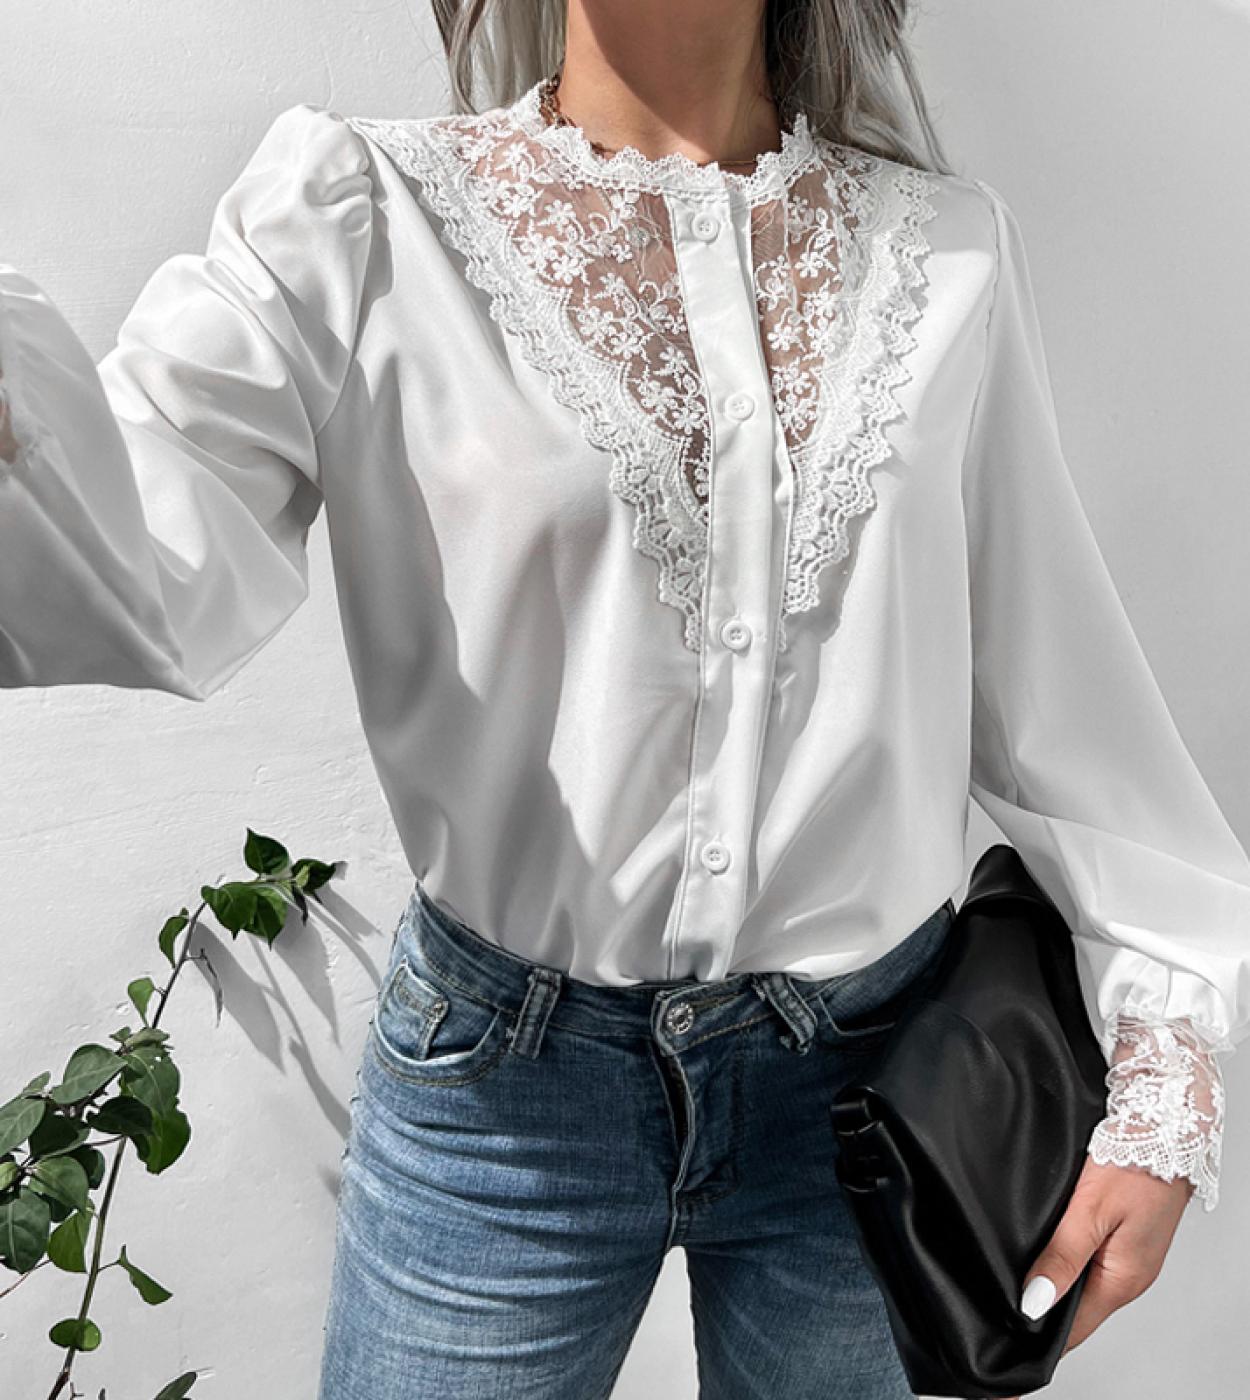 חולצת תחרה אלגנטית וינטג נשים אופנה משרד עם שרוולים ארוכים בגדי חולצה רפויים בגדי רשת רשת חולצה לבנה חולצה עליונה